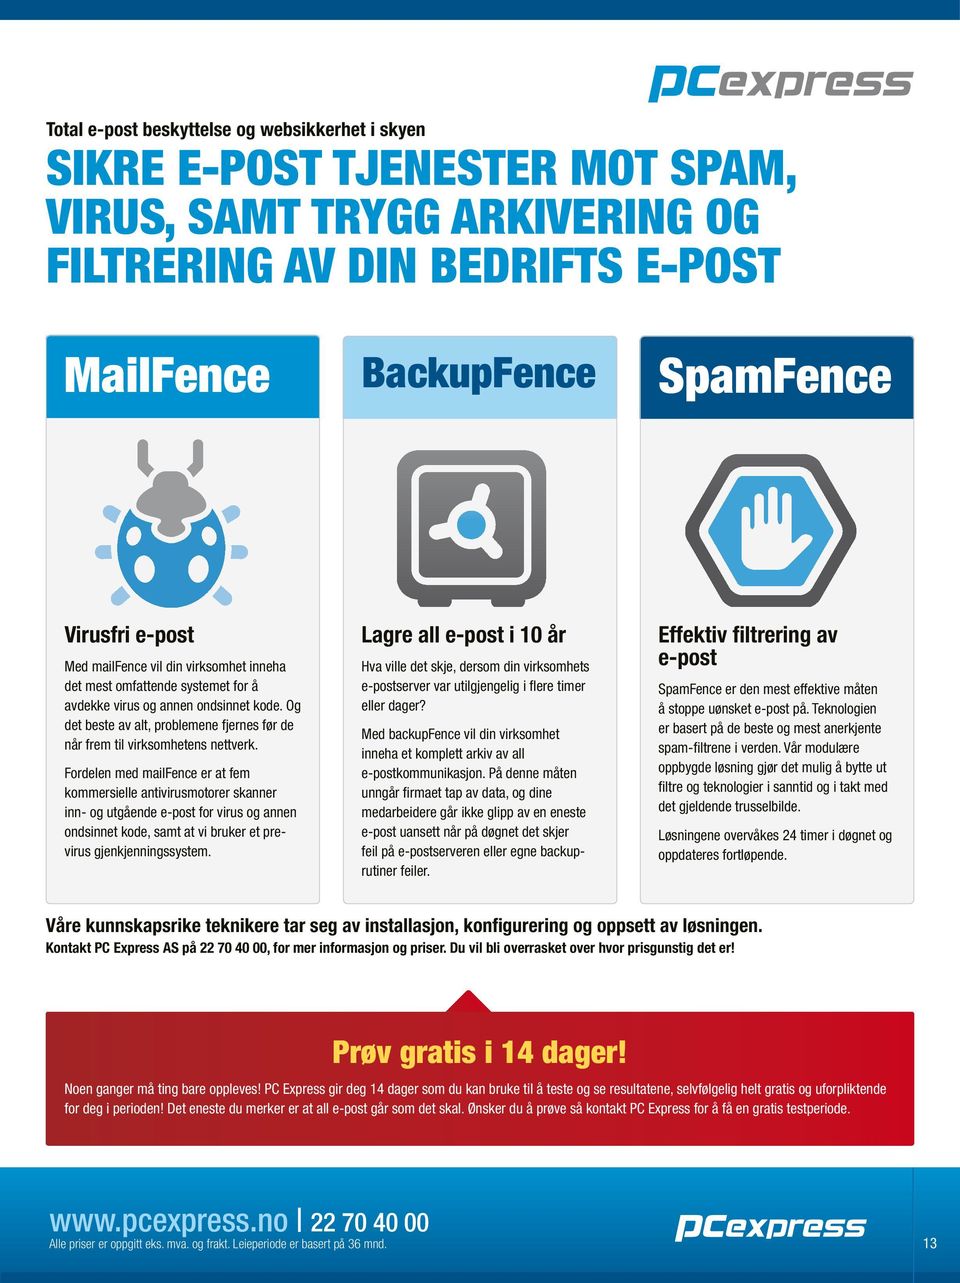 Fordelen med mailfence er at fem kommersielle antivirusmotorer skanner inn- og utgående e-post for virus og annen ondsinnet kode, samt at vi bruker et previrus gjenkjenningssystem.